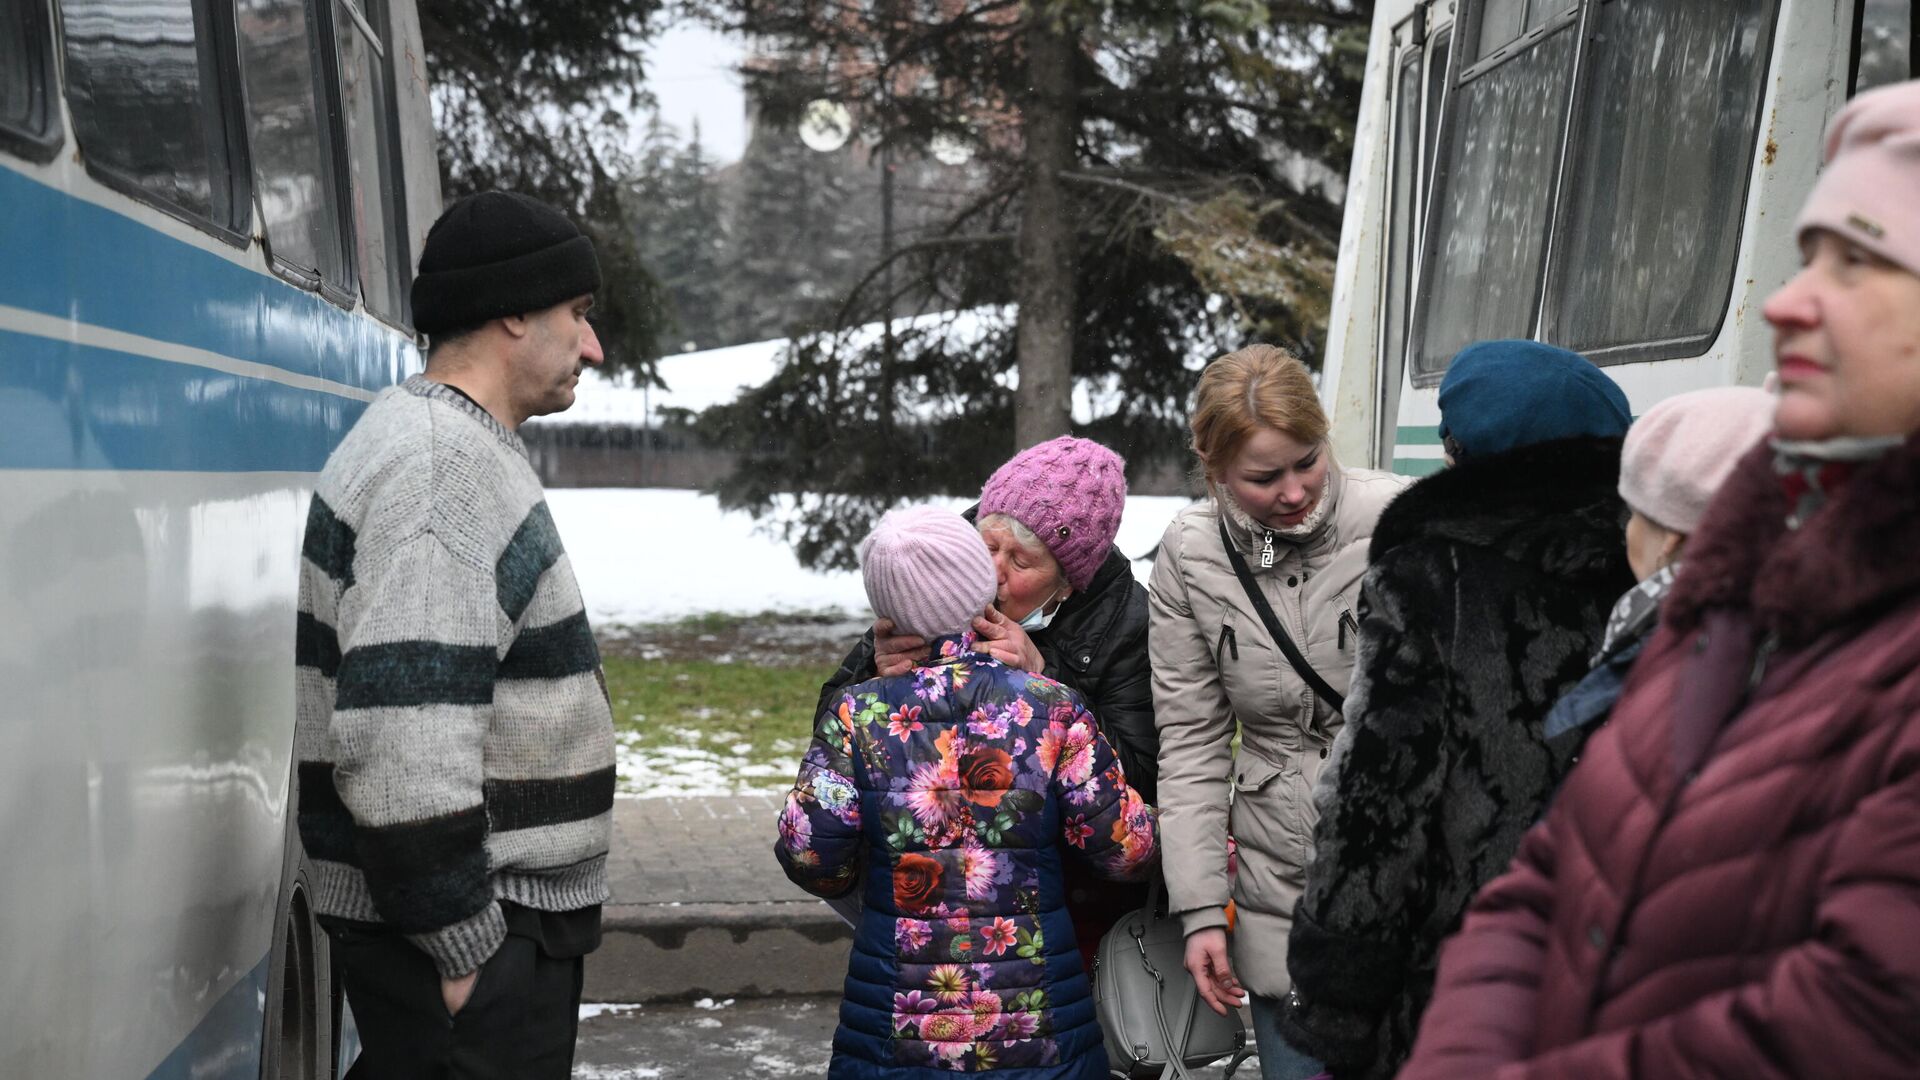 Люди прощаются возле автобуса во время эвакуации из Горловки на территорию России - Sputnik Latvija, 1920, 27.03.2022